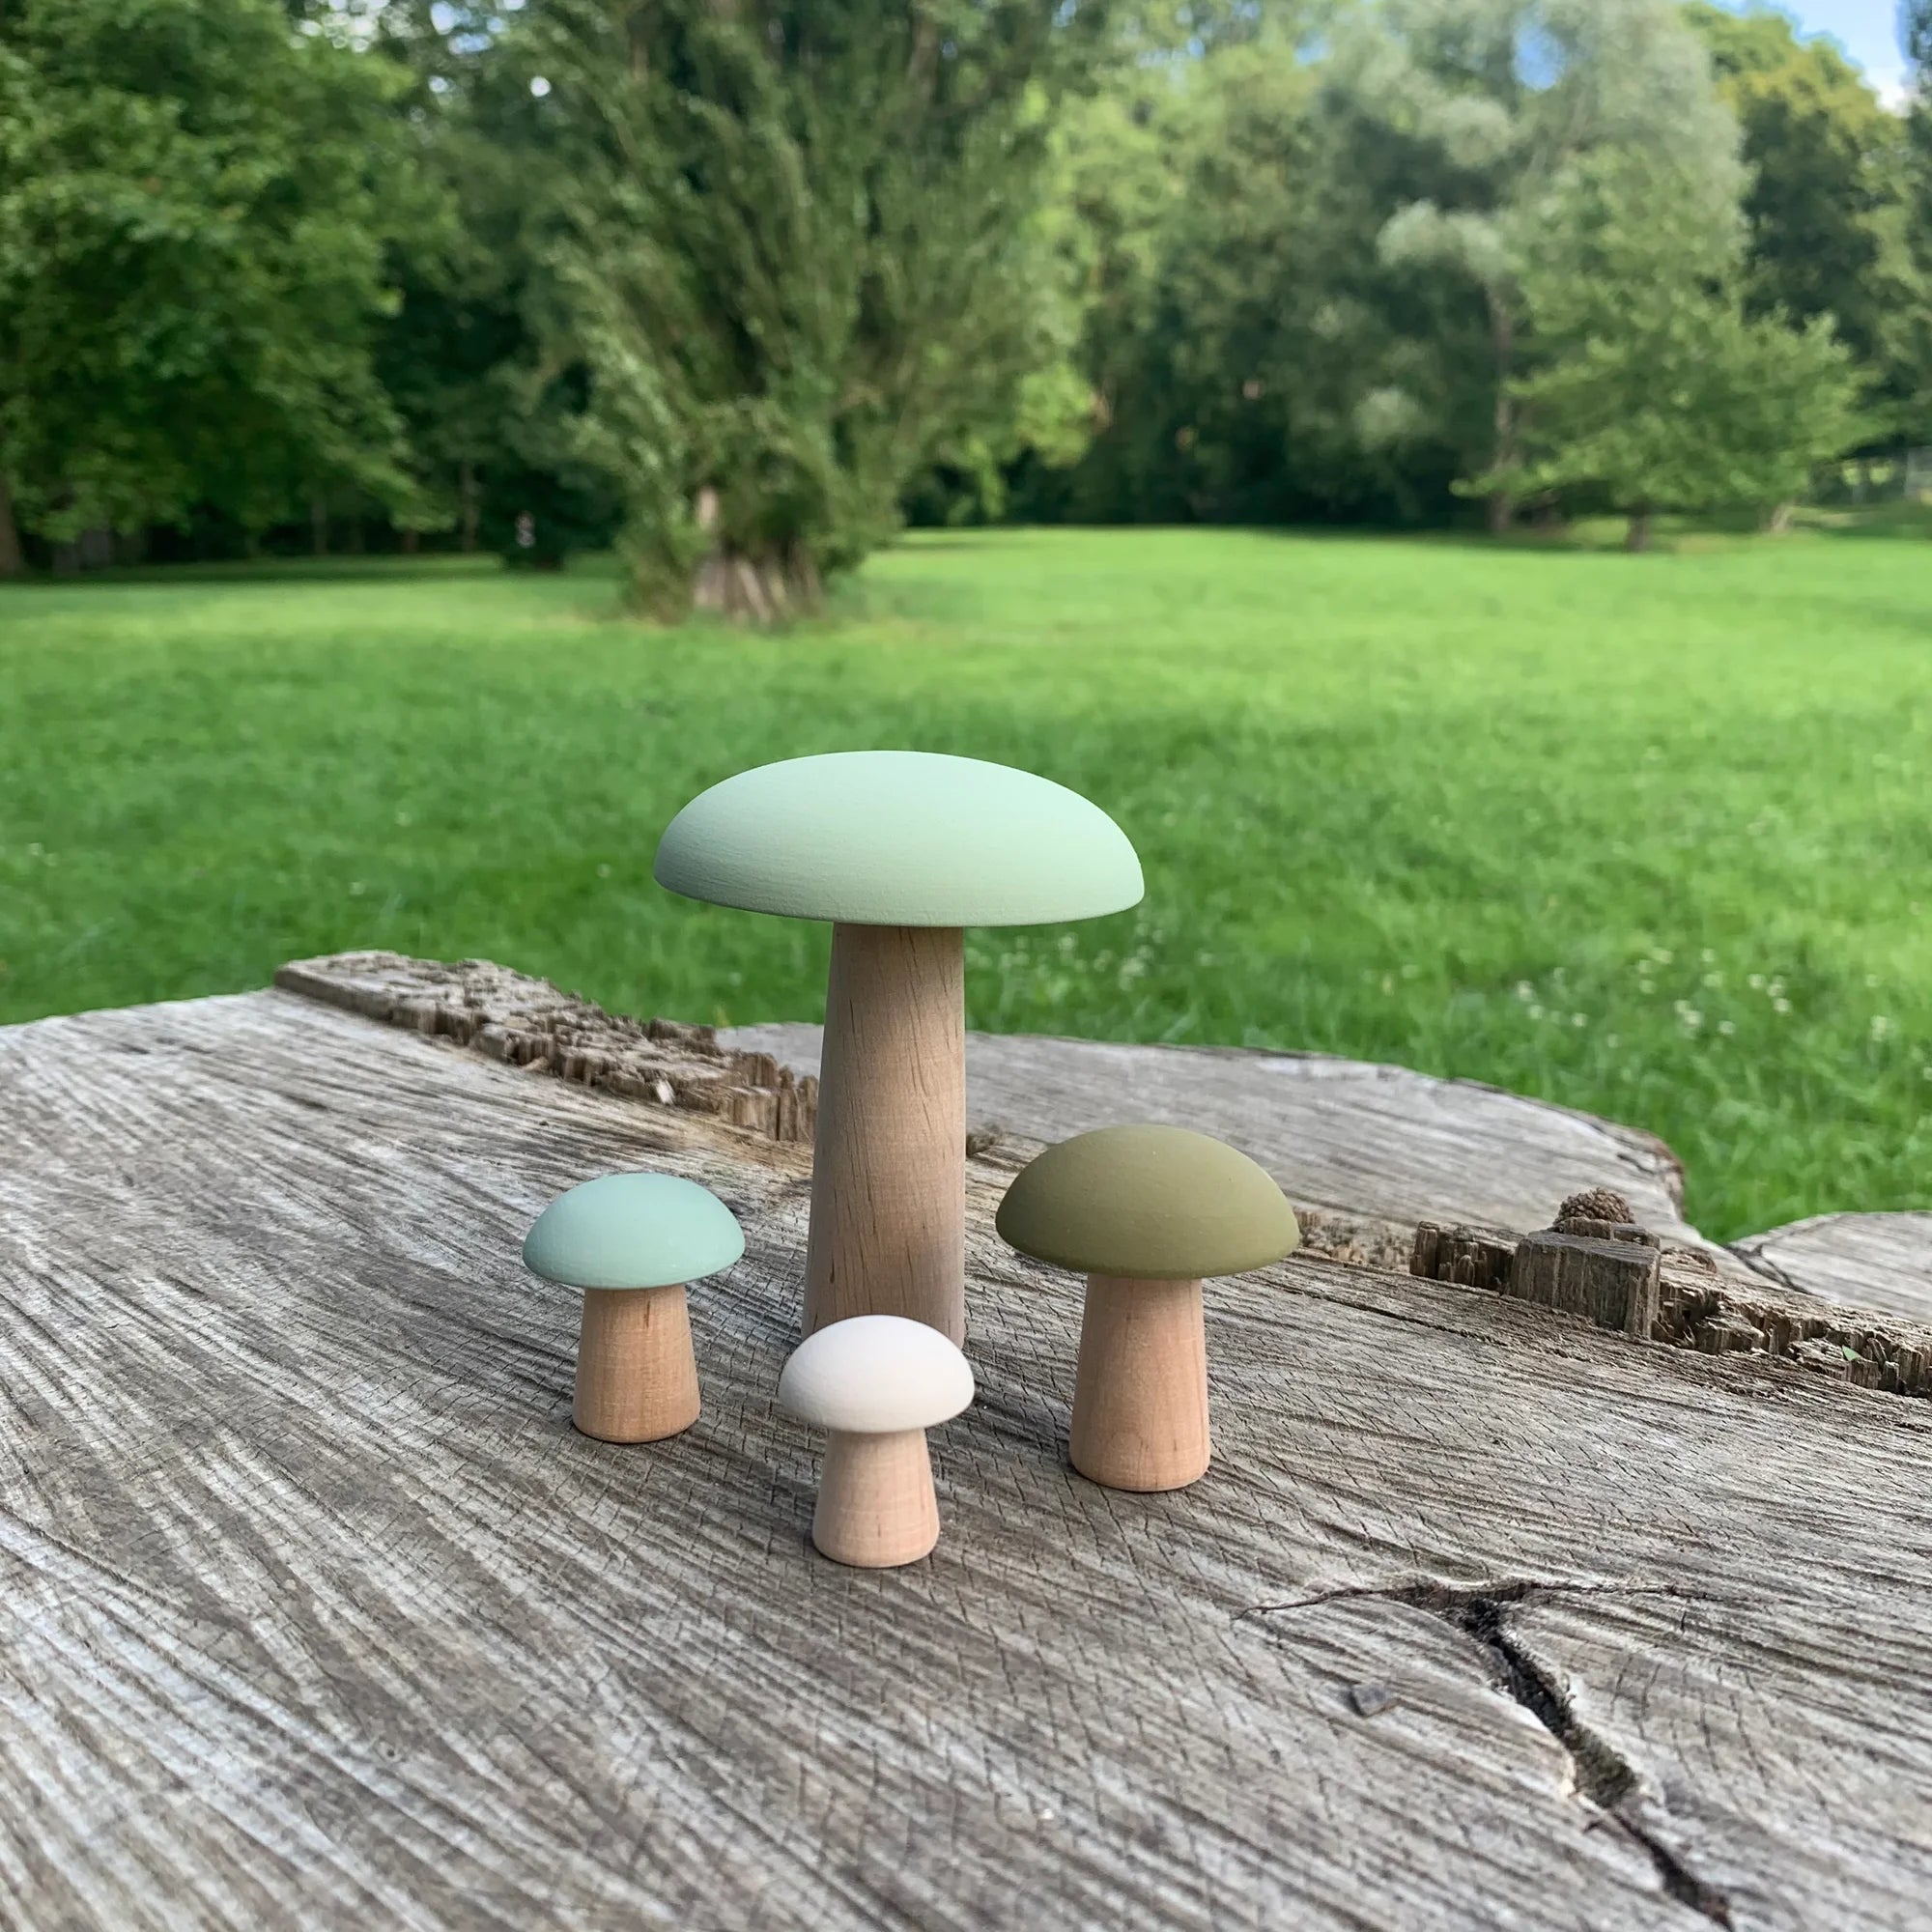 Wooden Mushrooms - Green Moss